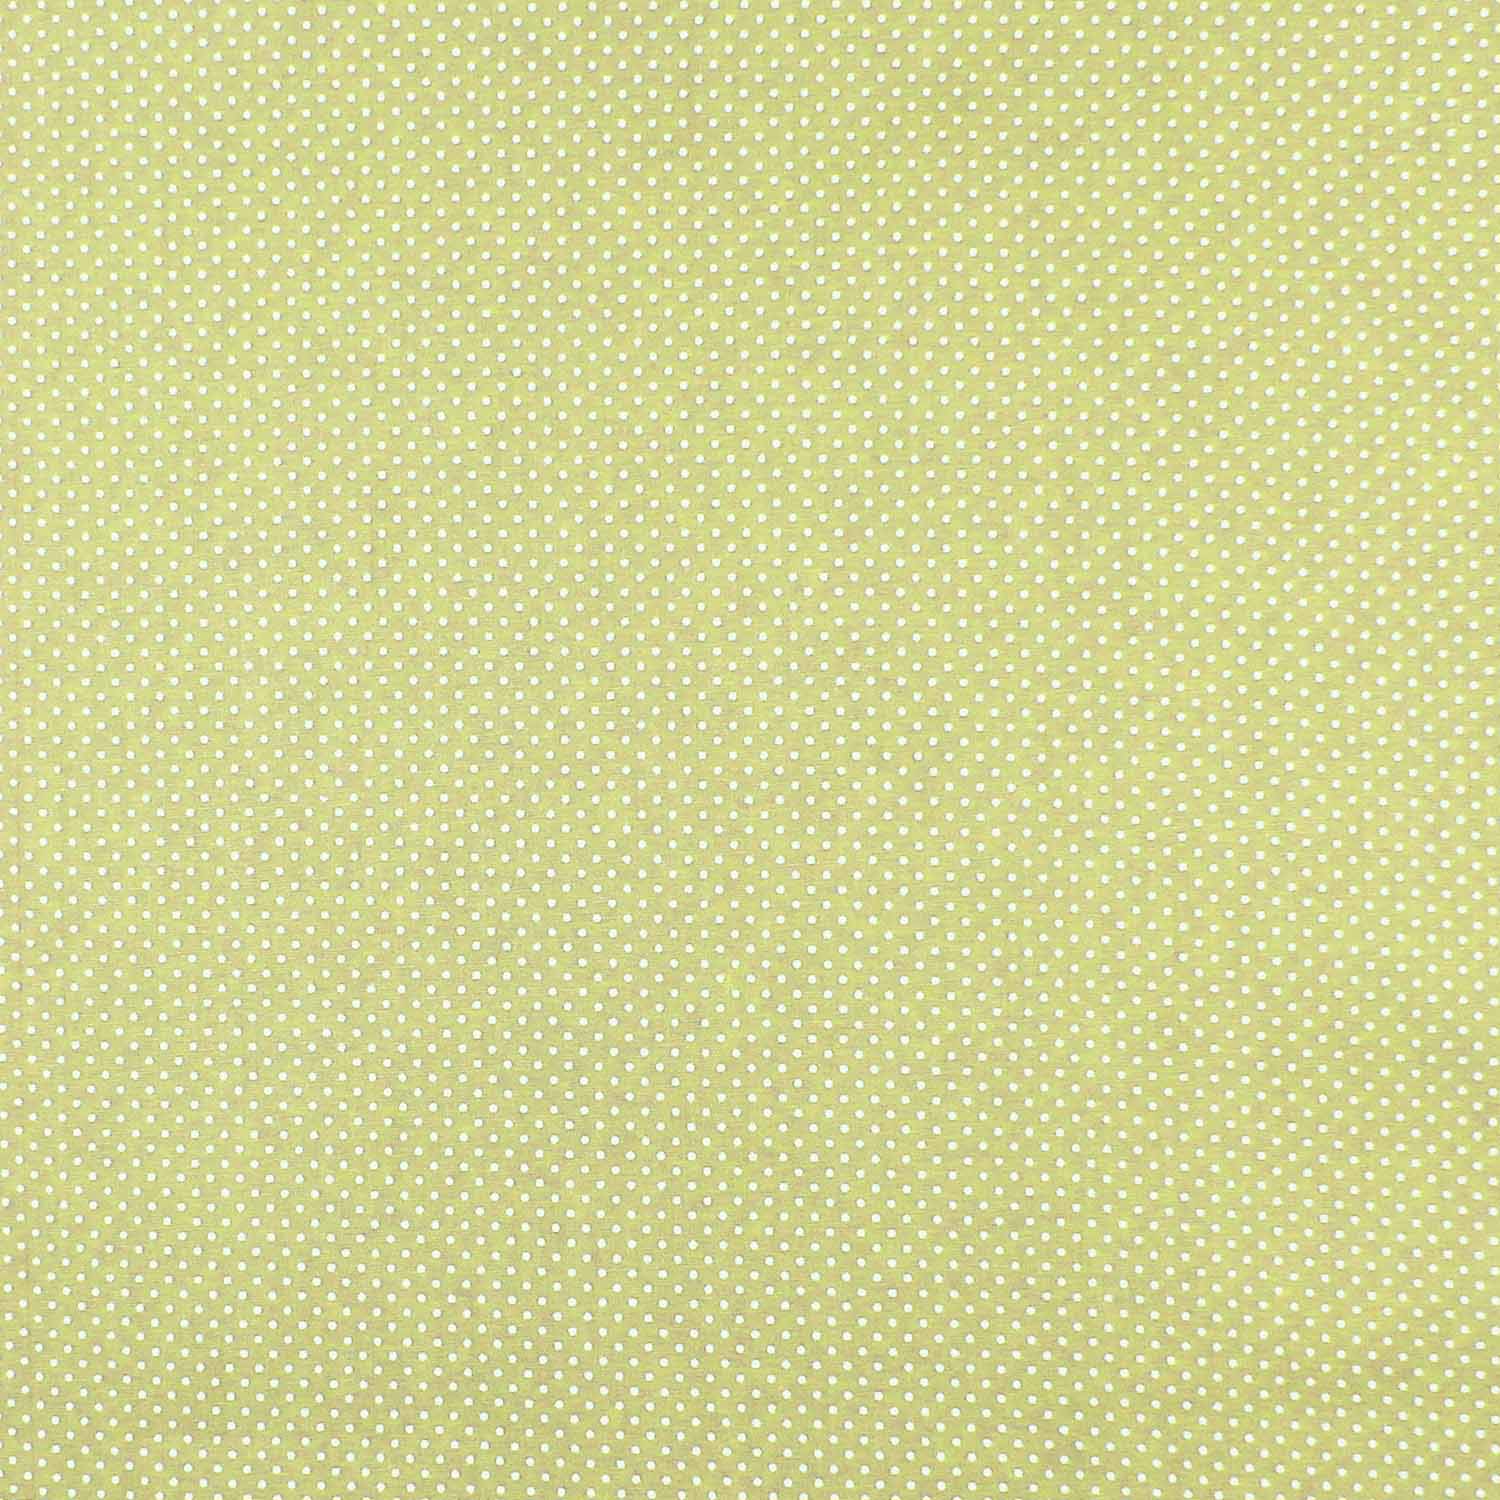 tecido-tricoline-poa-mini-branco-fundo-amarelo-candy-della-aviamentos-10878